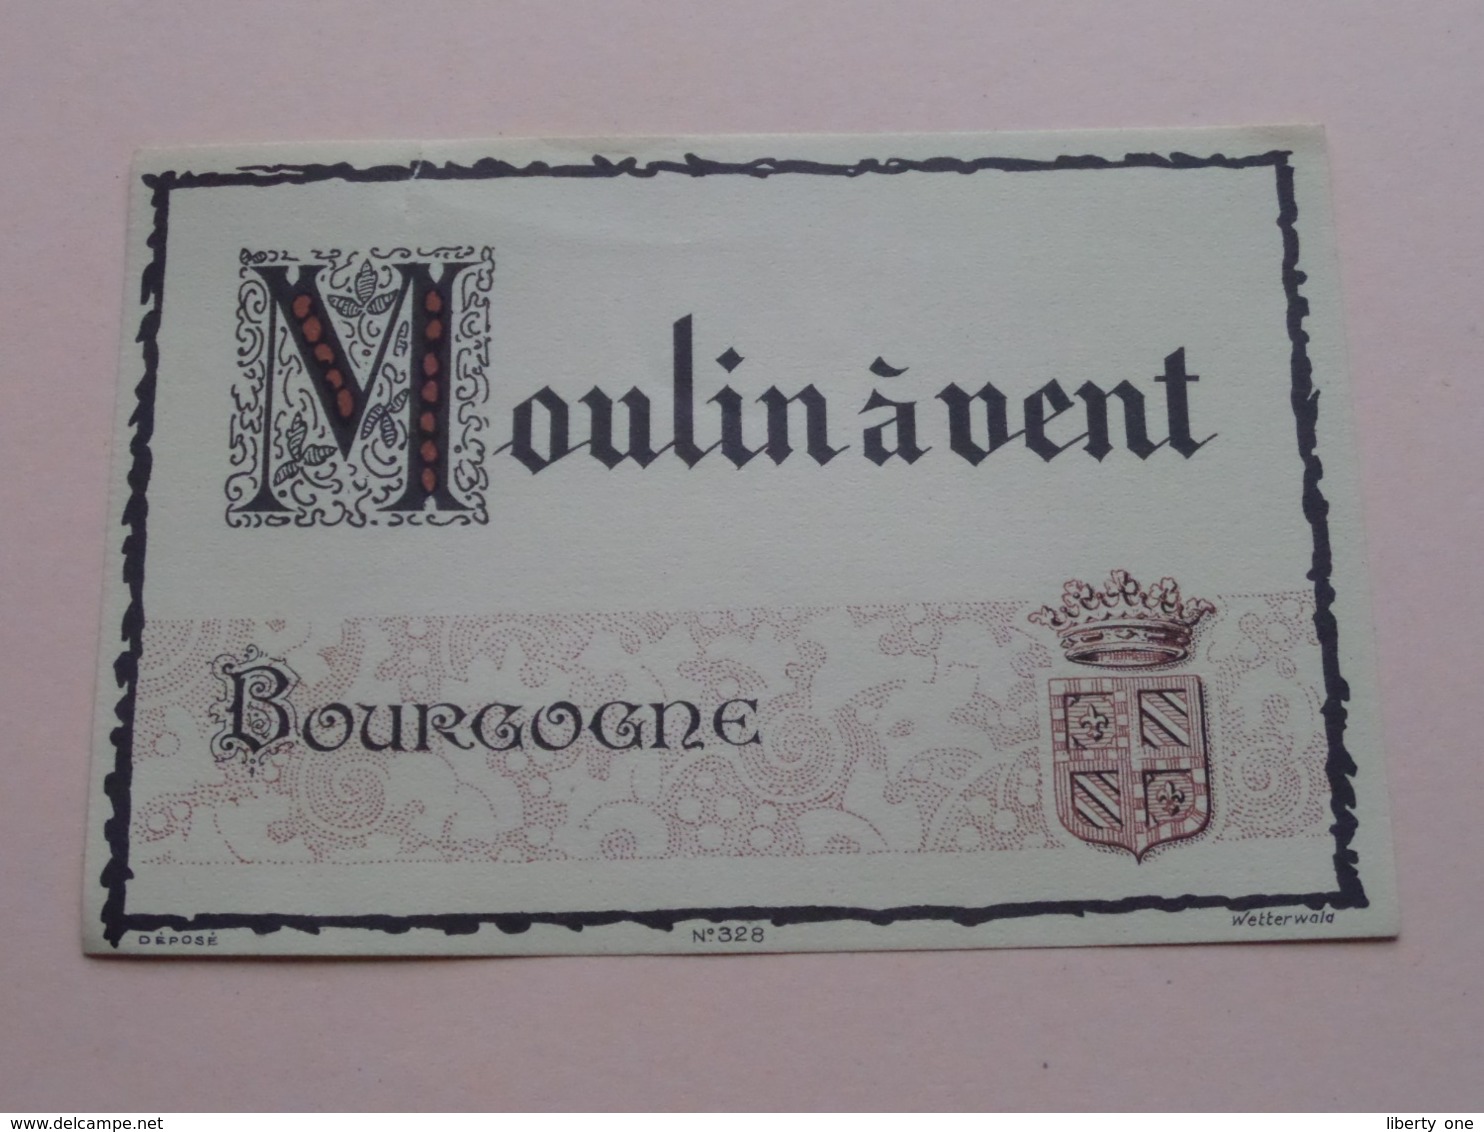 MOULIN à VENT Bourgogner ( N° 328 - Wetterwald ) Etiket / Etiquette / Label ( > Photo > DETAIL ) ! - Bourgogne